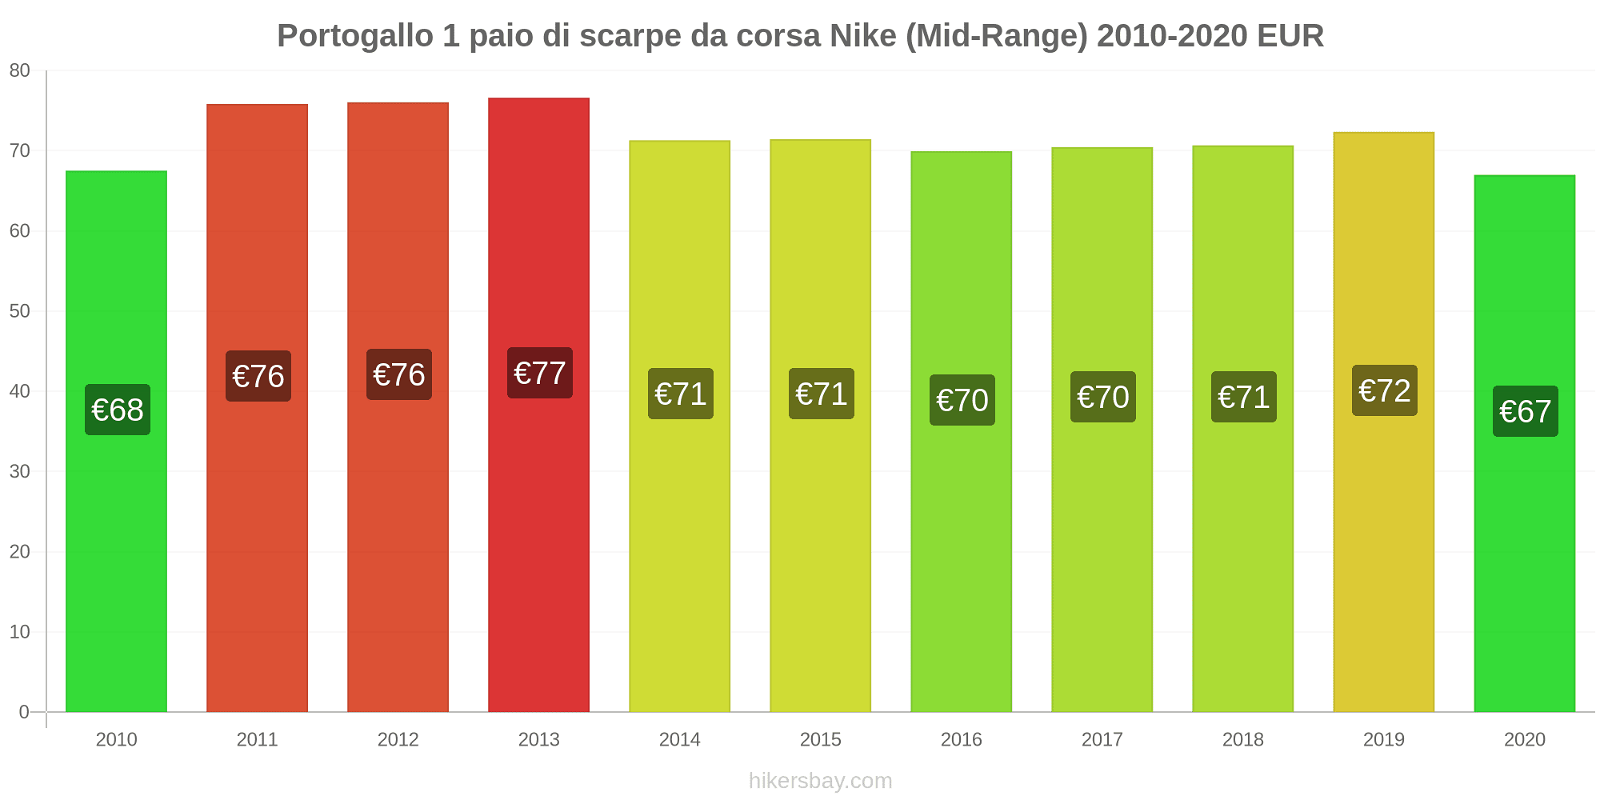 Portogallo variazioni di prezzo 1 paio di scarpe da corsa Nike (simile) hikersbay.com